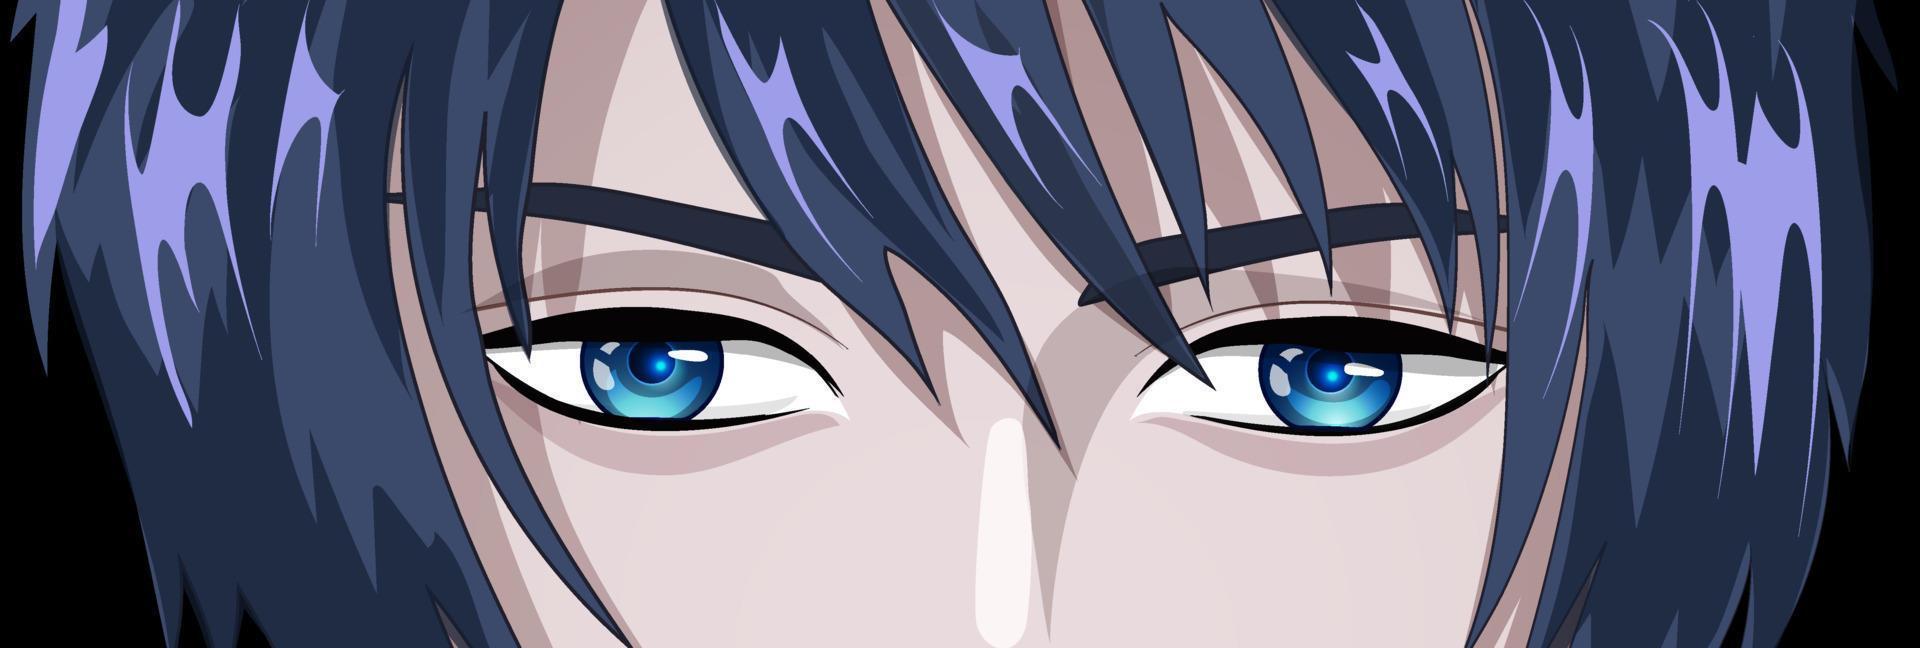 jong Mens met blauw ogen in de stijl van manga en animatie. vector